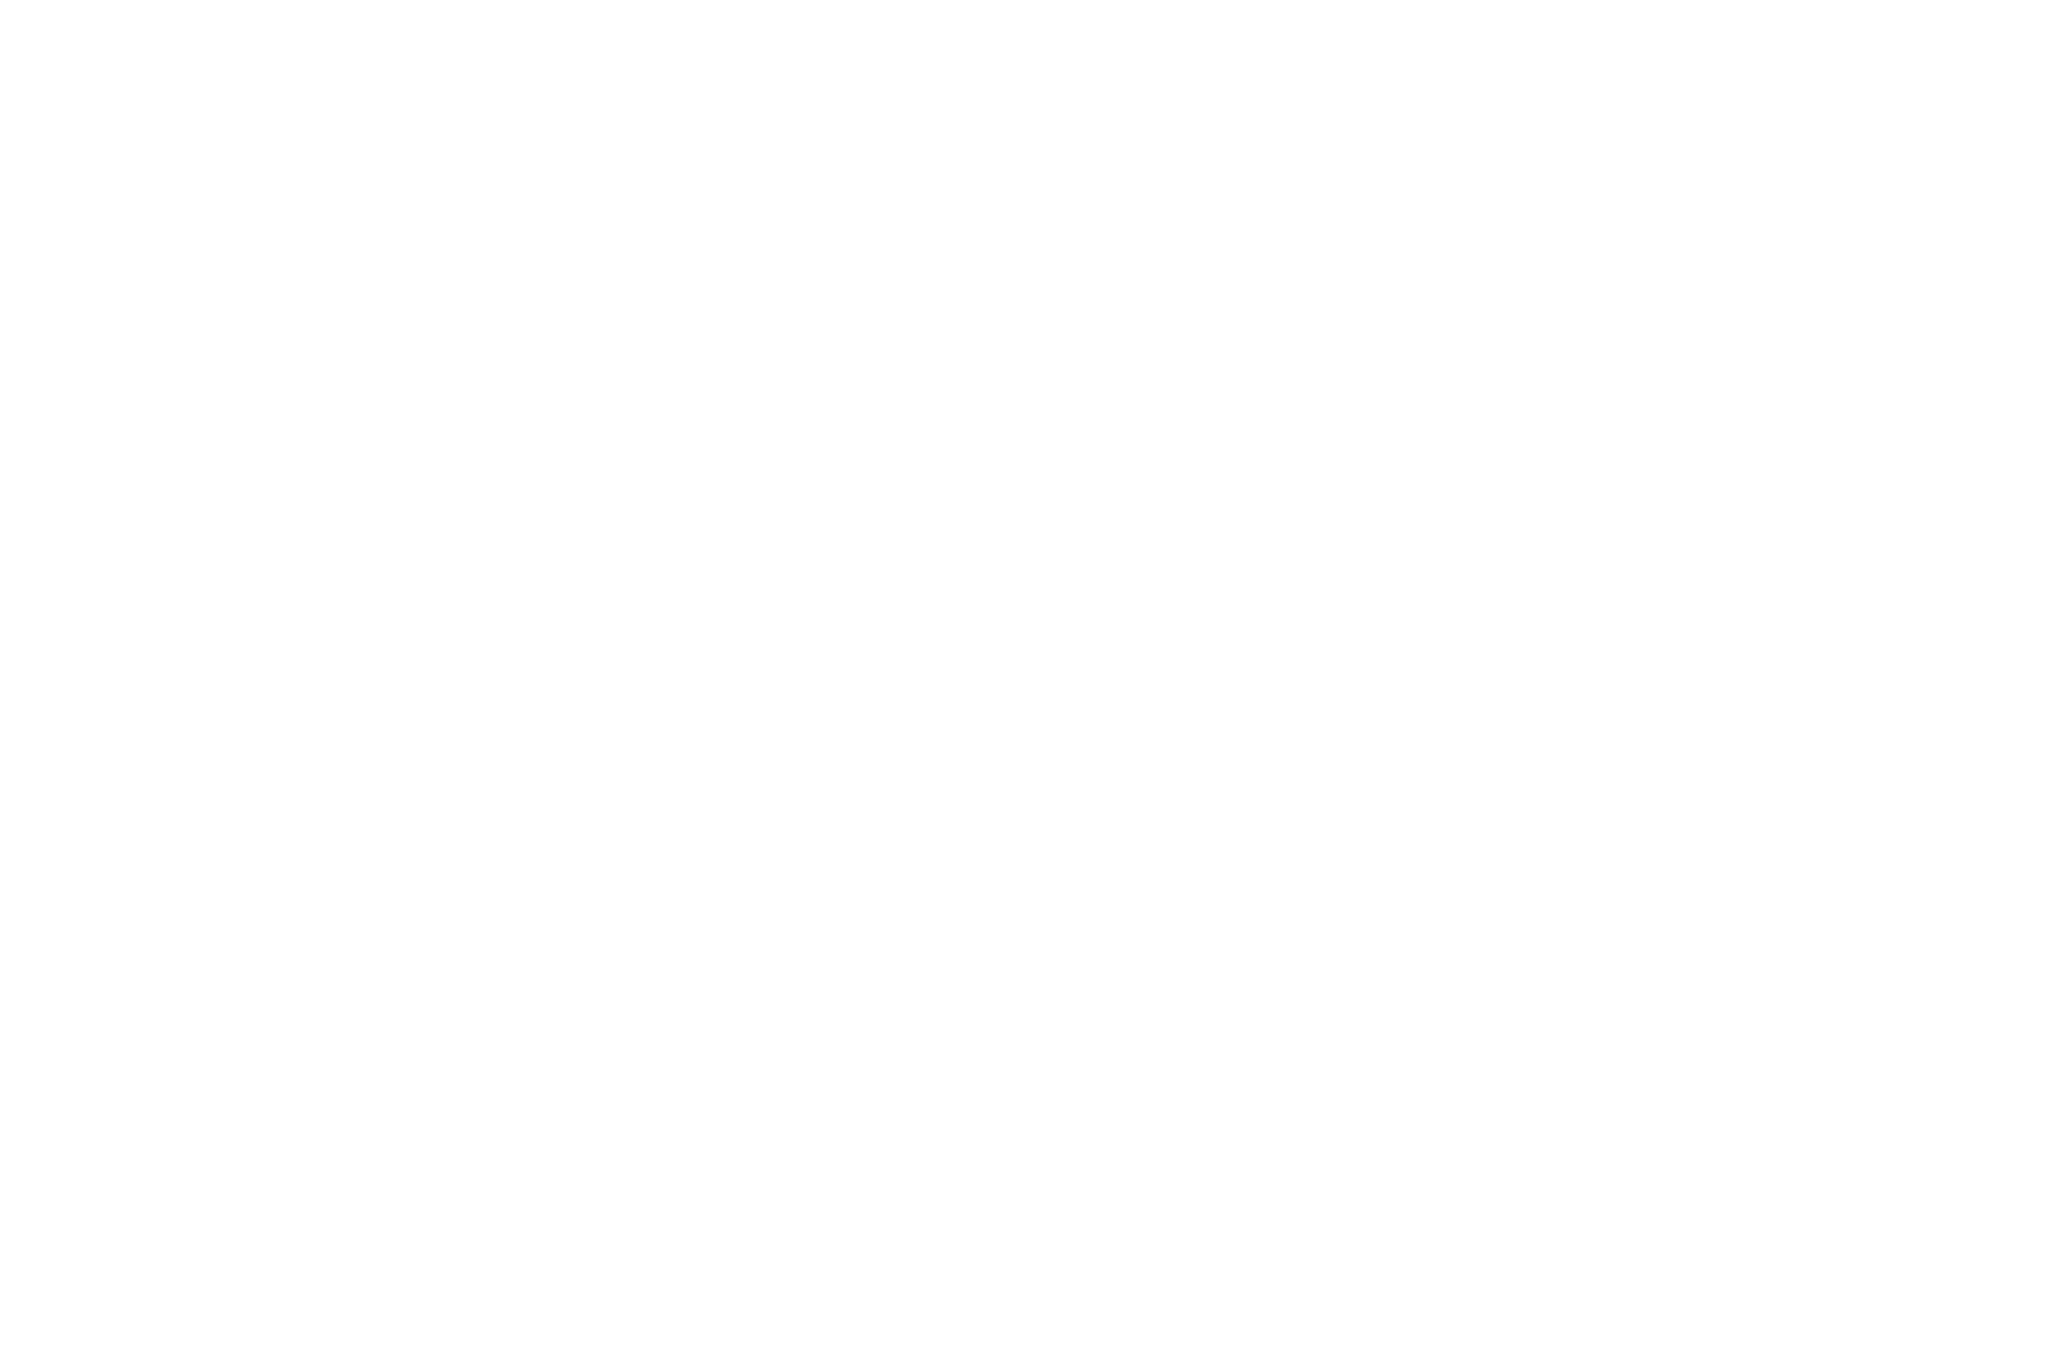 Cannes World Art Festival - Award Winner (White)